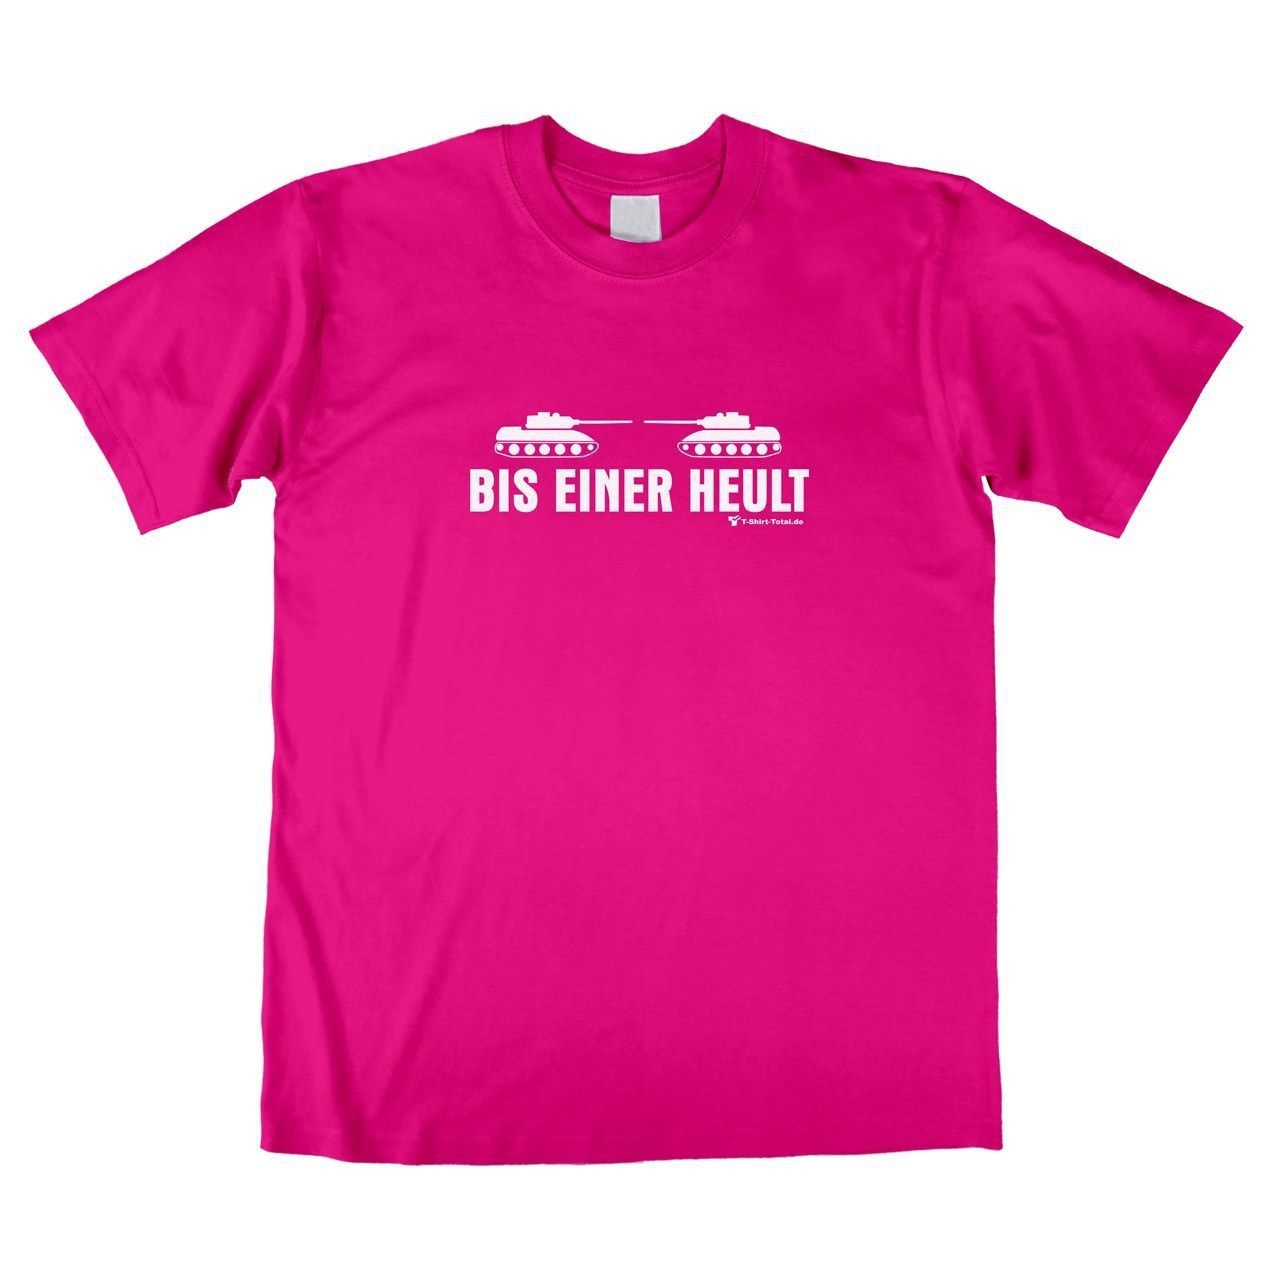 Bis einer heult Unisex T-Shirt pink Small